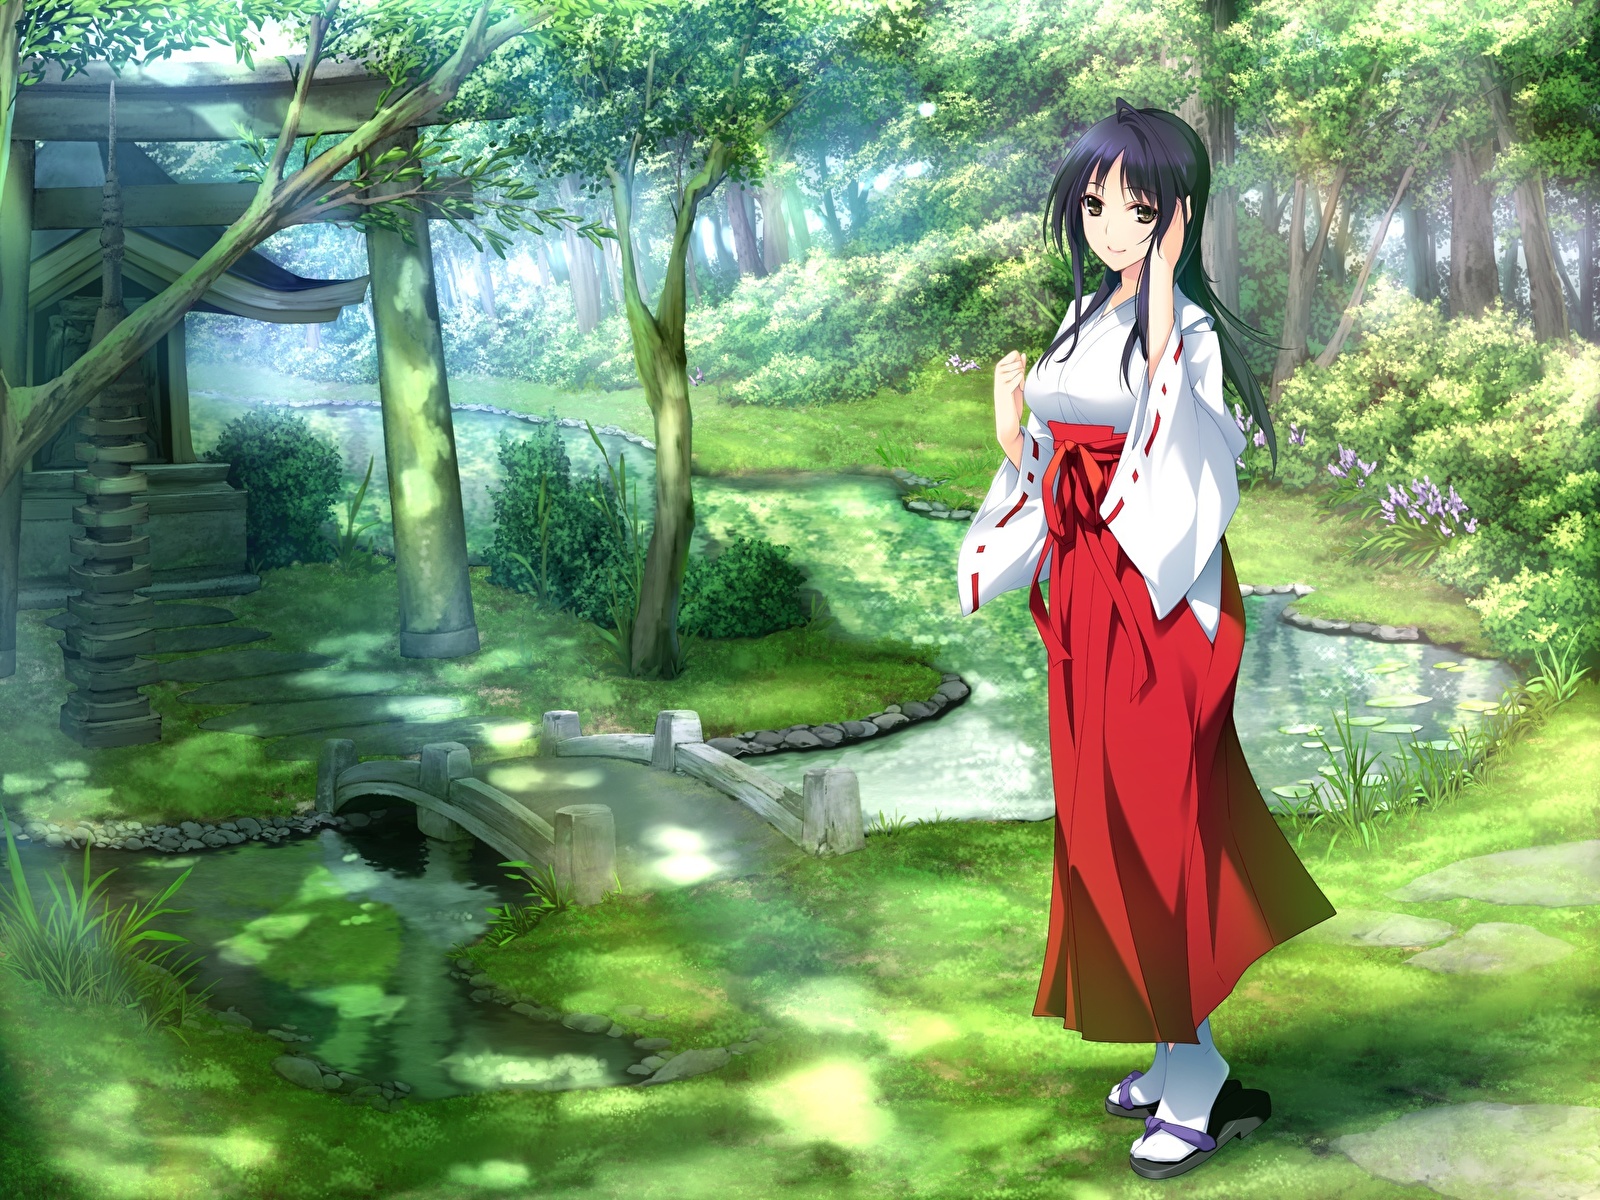 Shrine Maiden Anime Girl - 1600x1200 Wallpaper 